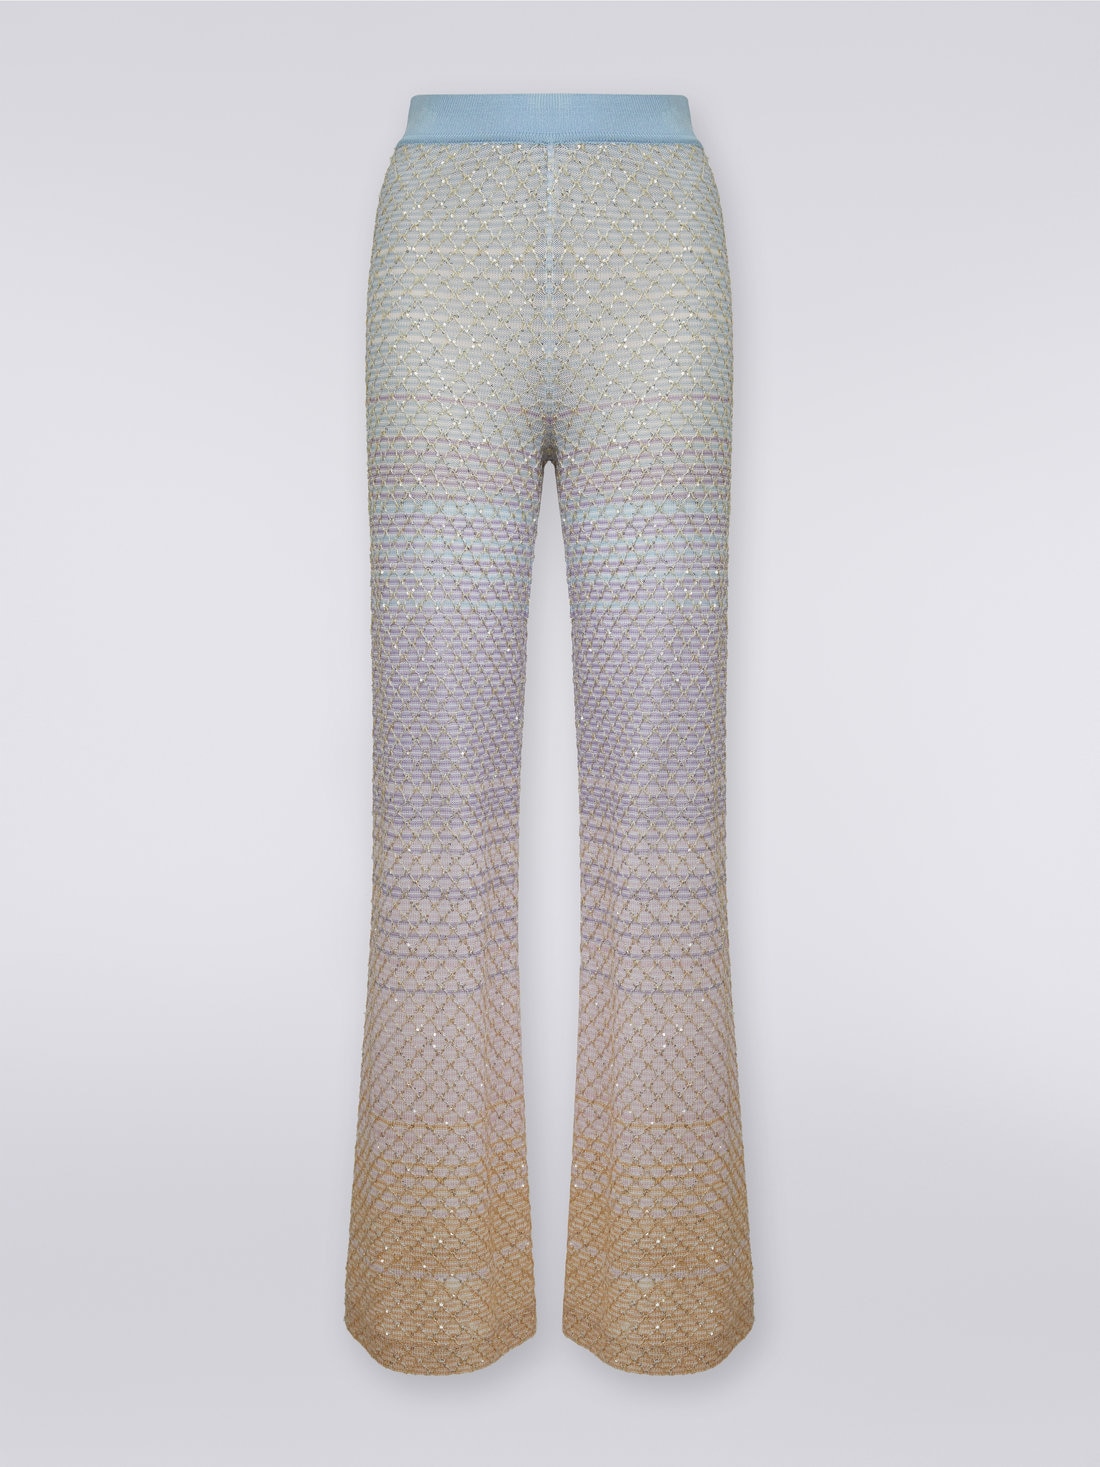 Pantalon en viscose mélangée avec finition résille et paillettes, Multicolore  - DS23WI0RBK026WS019A - 0